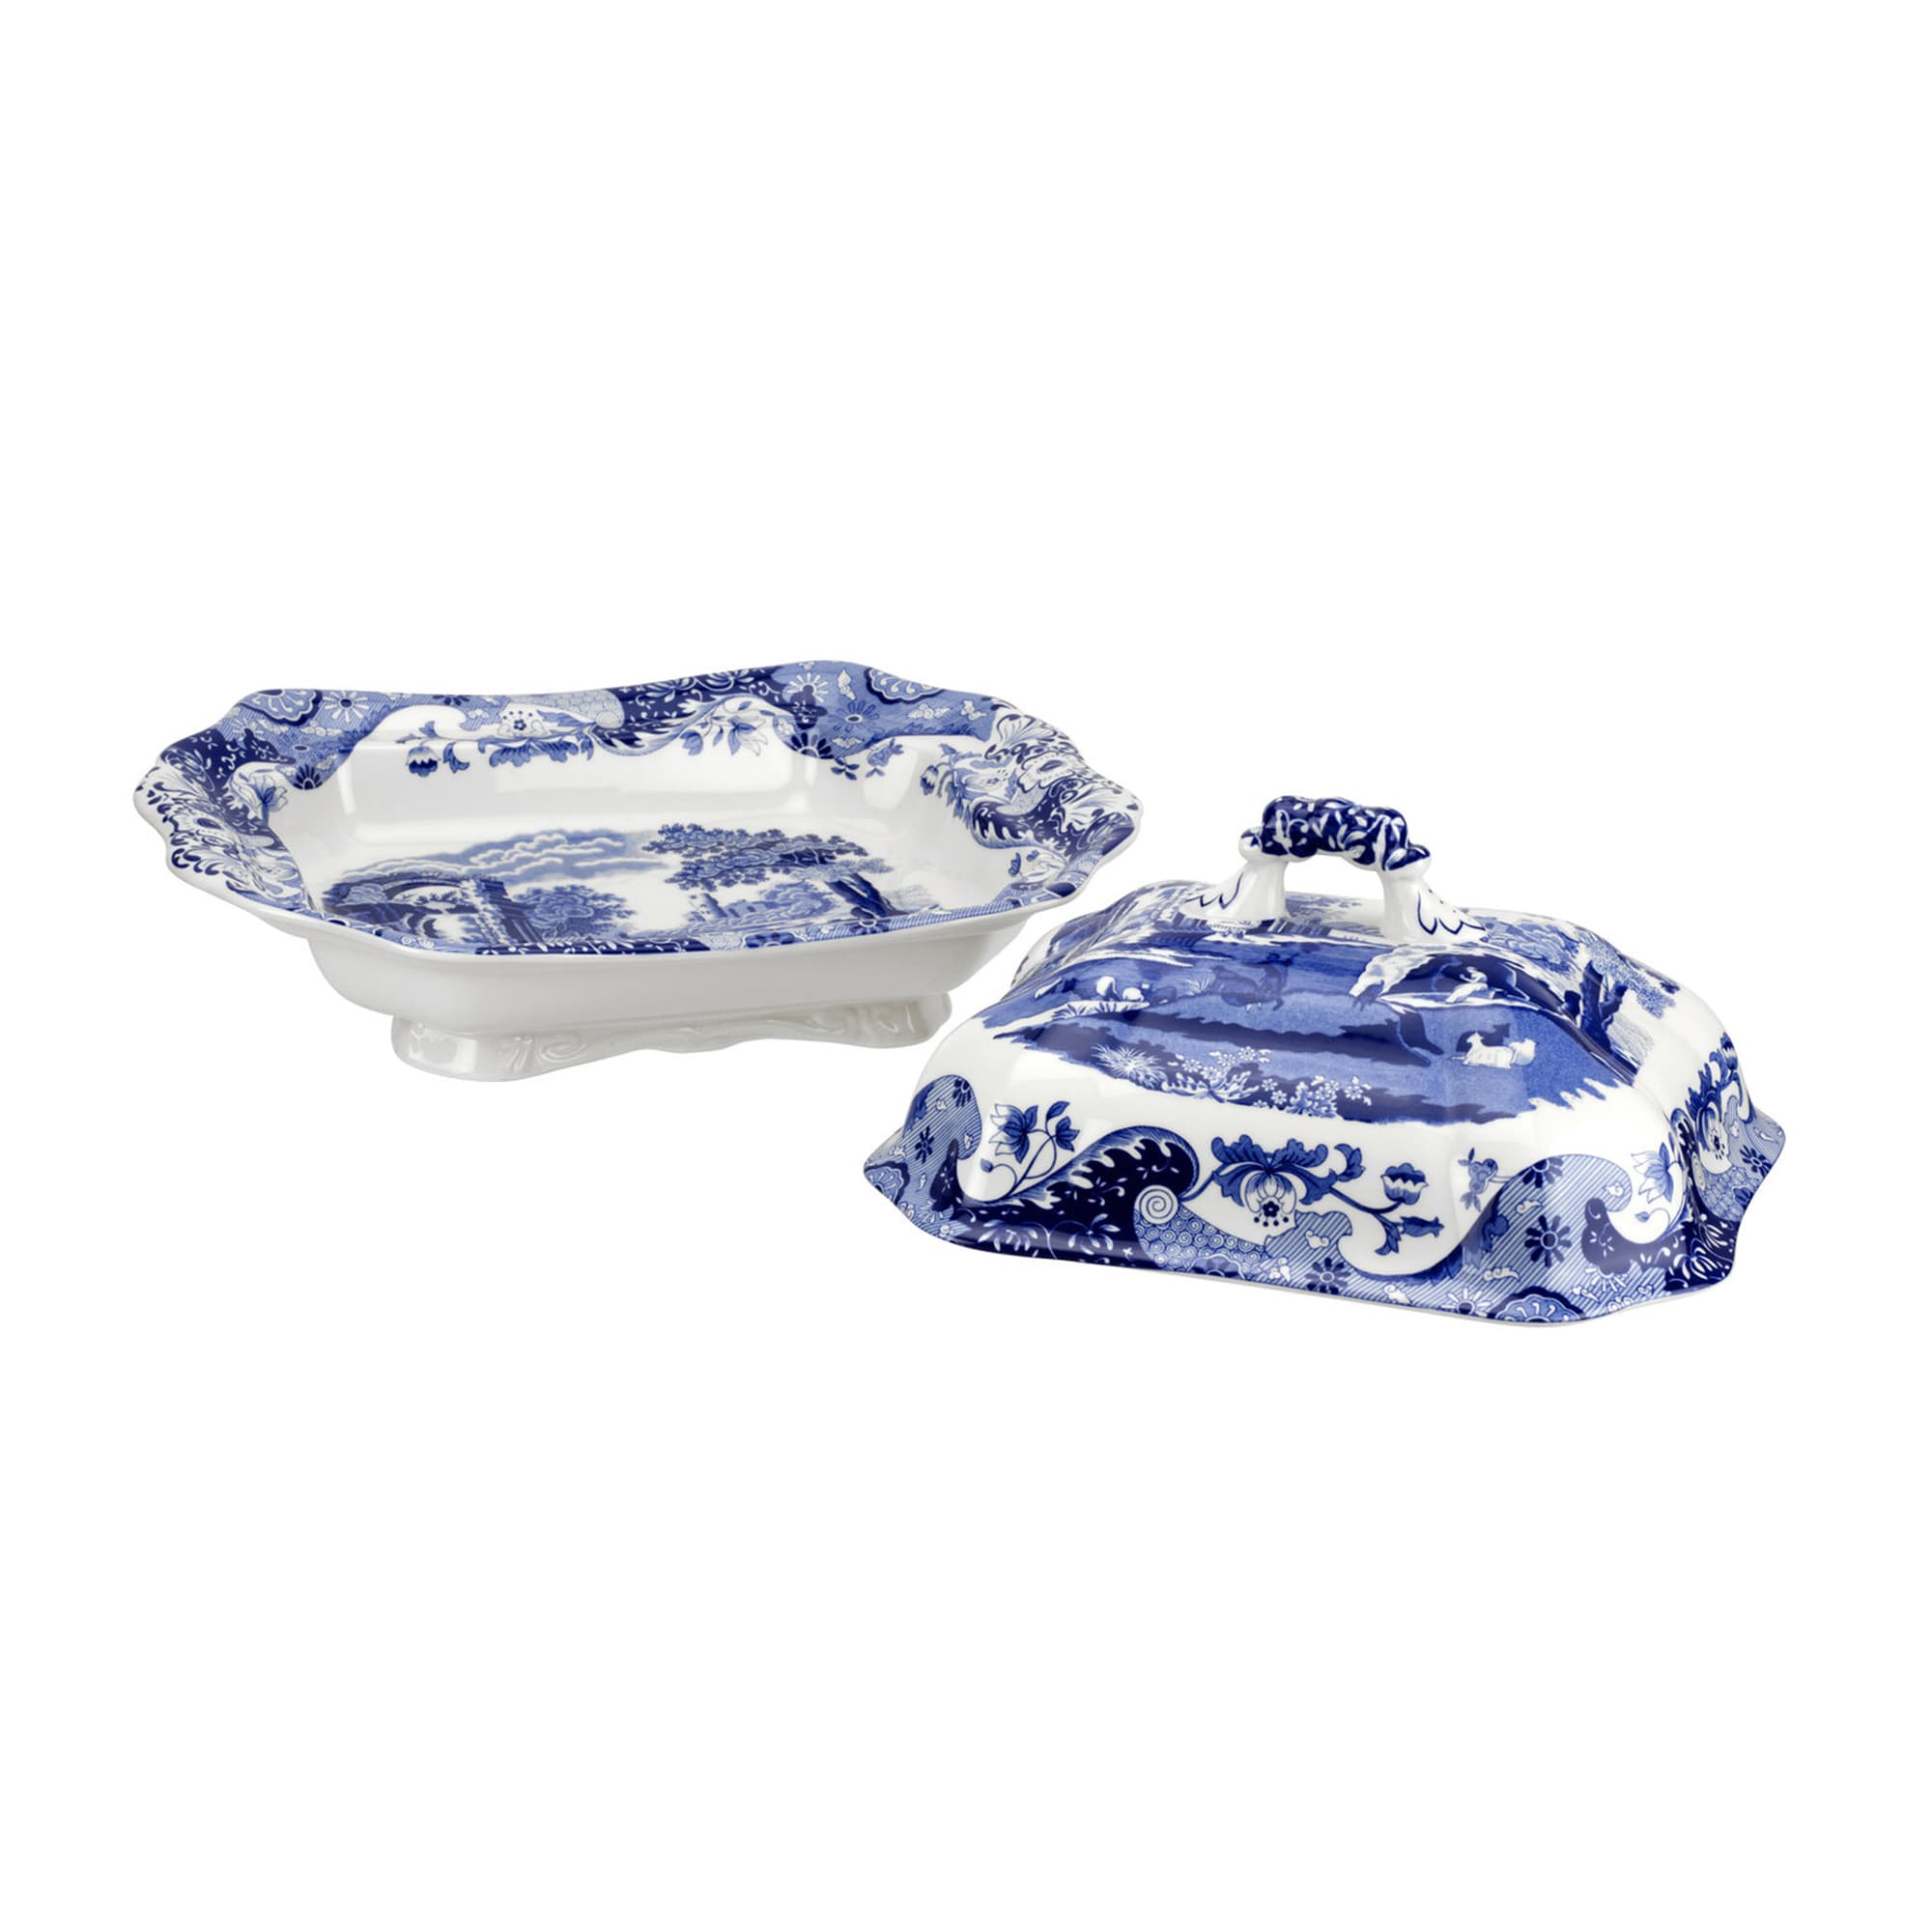 Royal Copenhagen Blue Fluted Plain Porcelain Tea Service